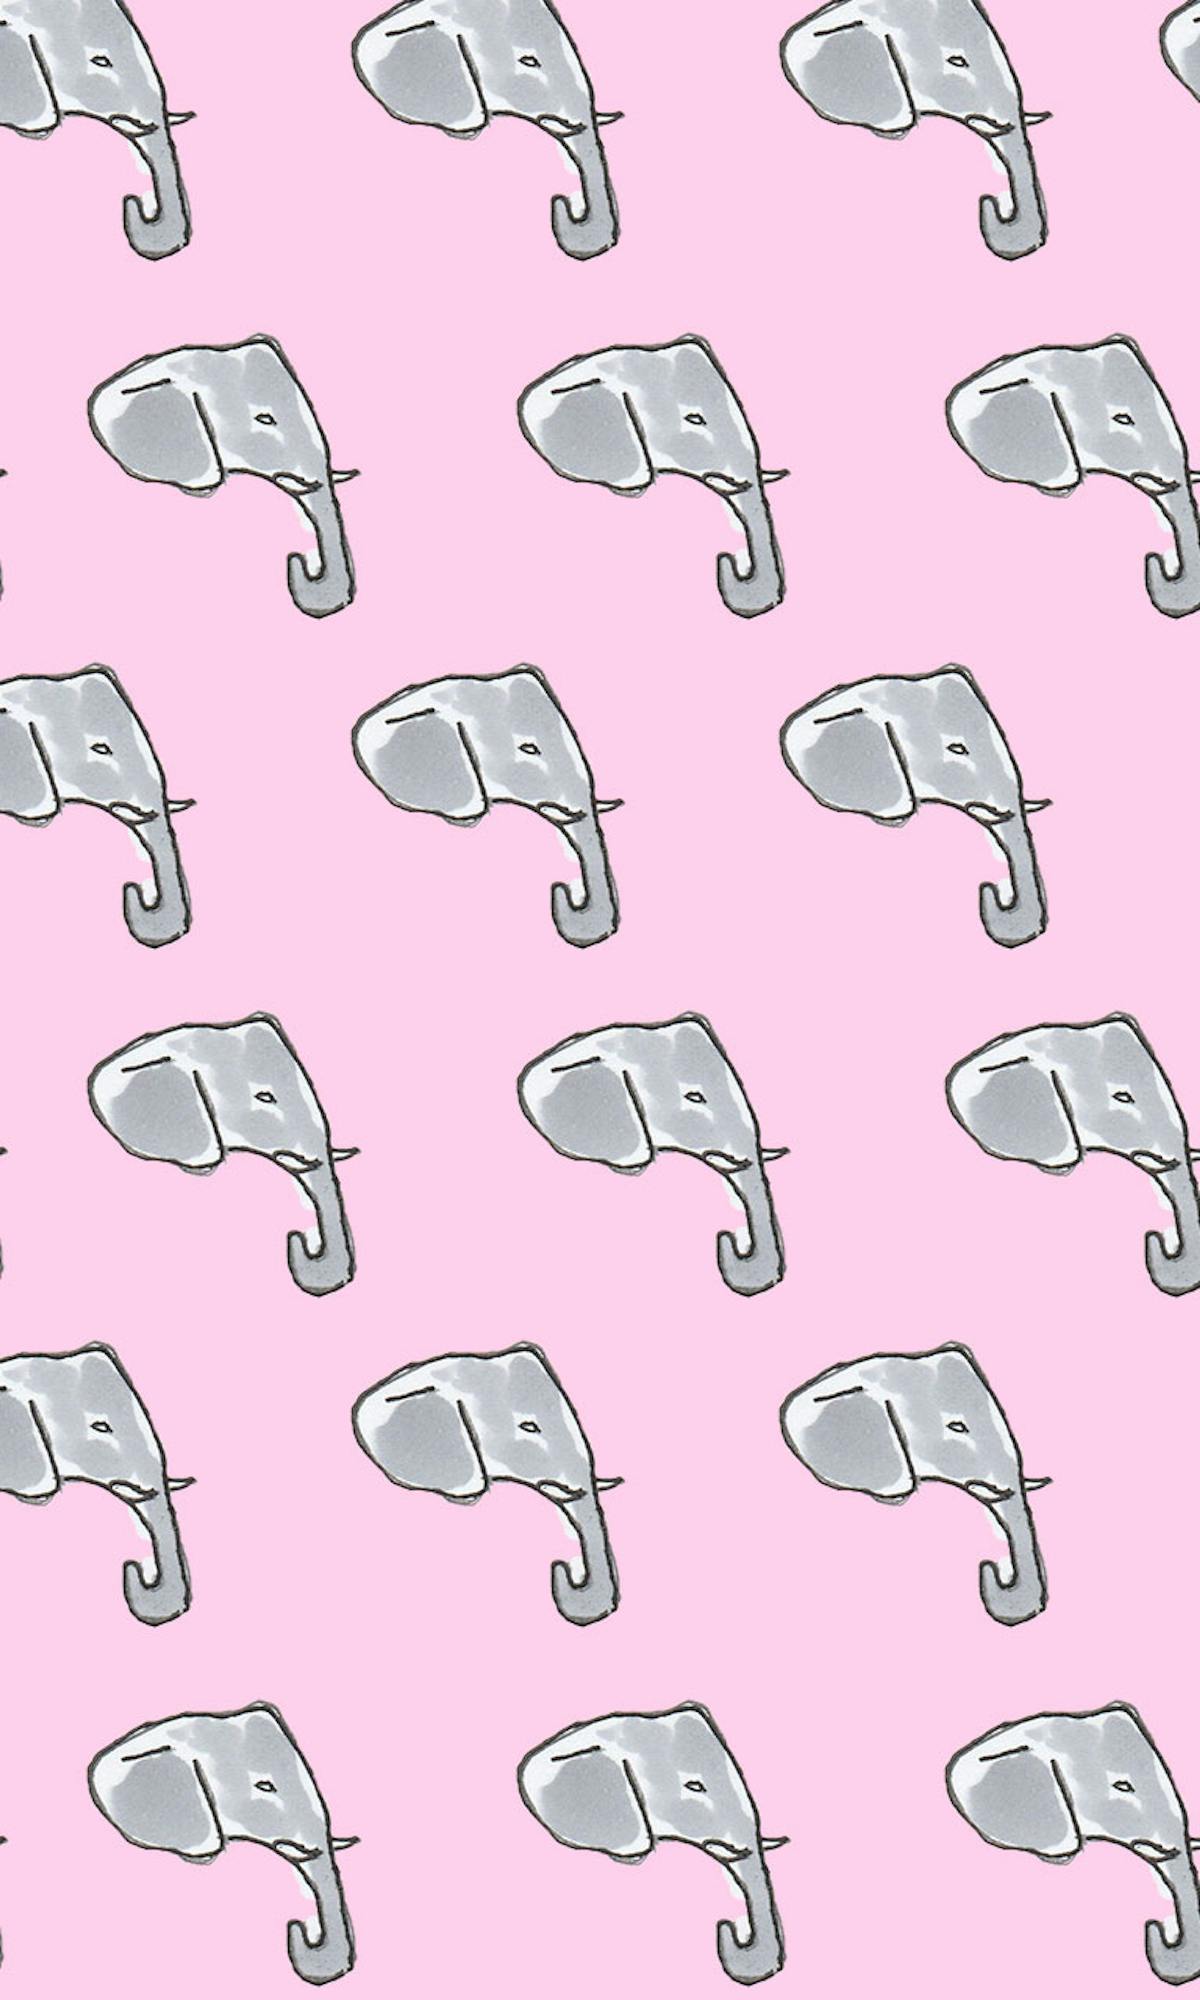 Garitma, fondo de pantalla para celular patrón de elefantes, dibujo marcador sobre papel